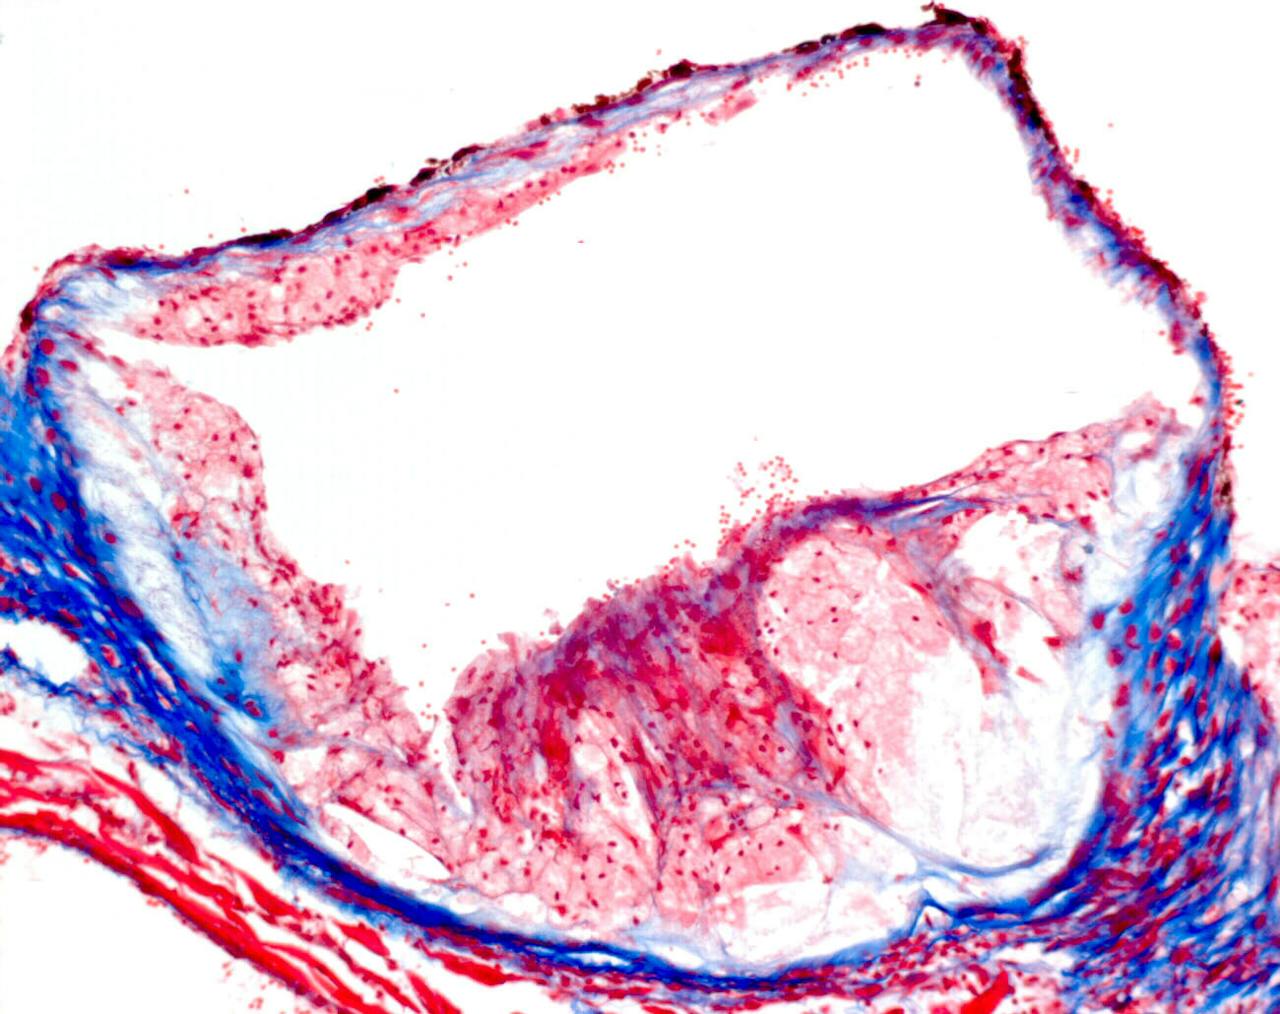 Doorsnede van het begin van de grote lichaamsslagader van een muis met daarin een atherosclerotische plaque. Weergegeven in het rood en blauw.